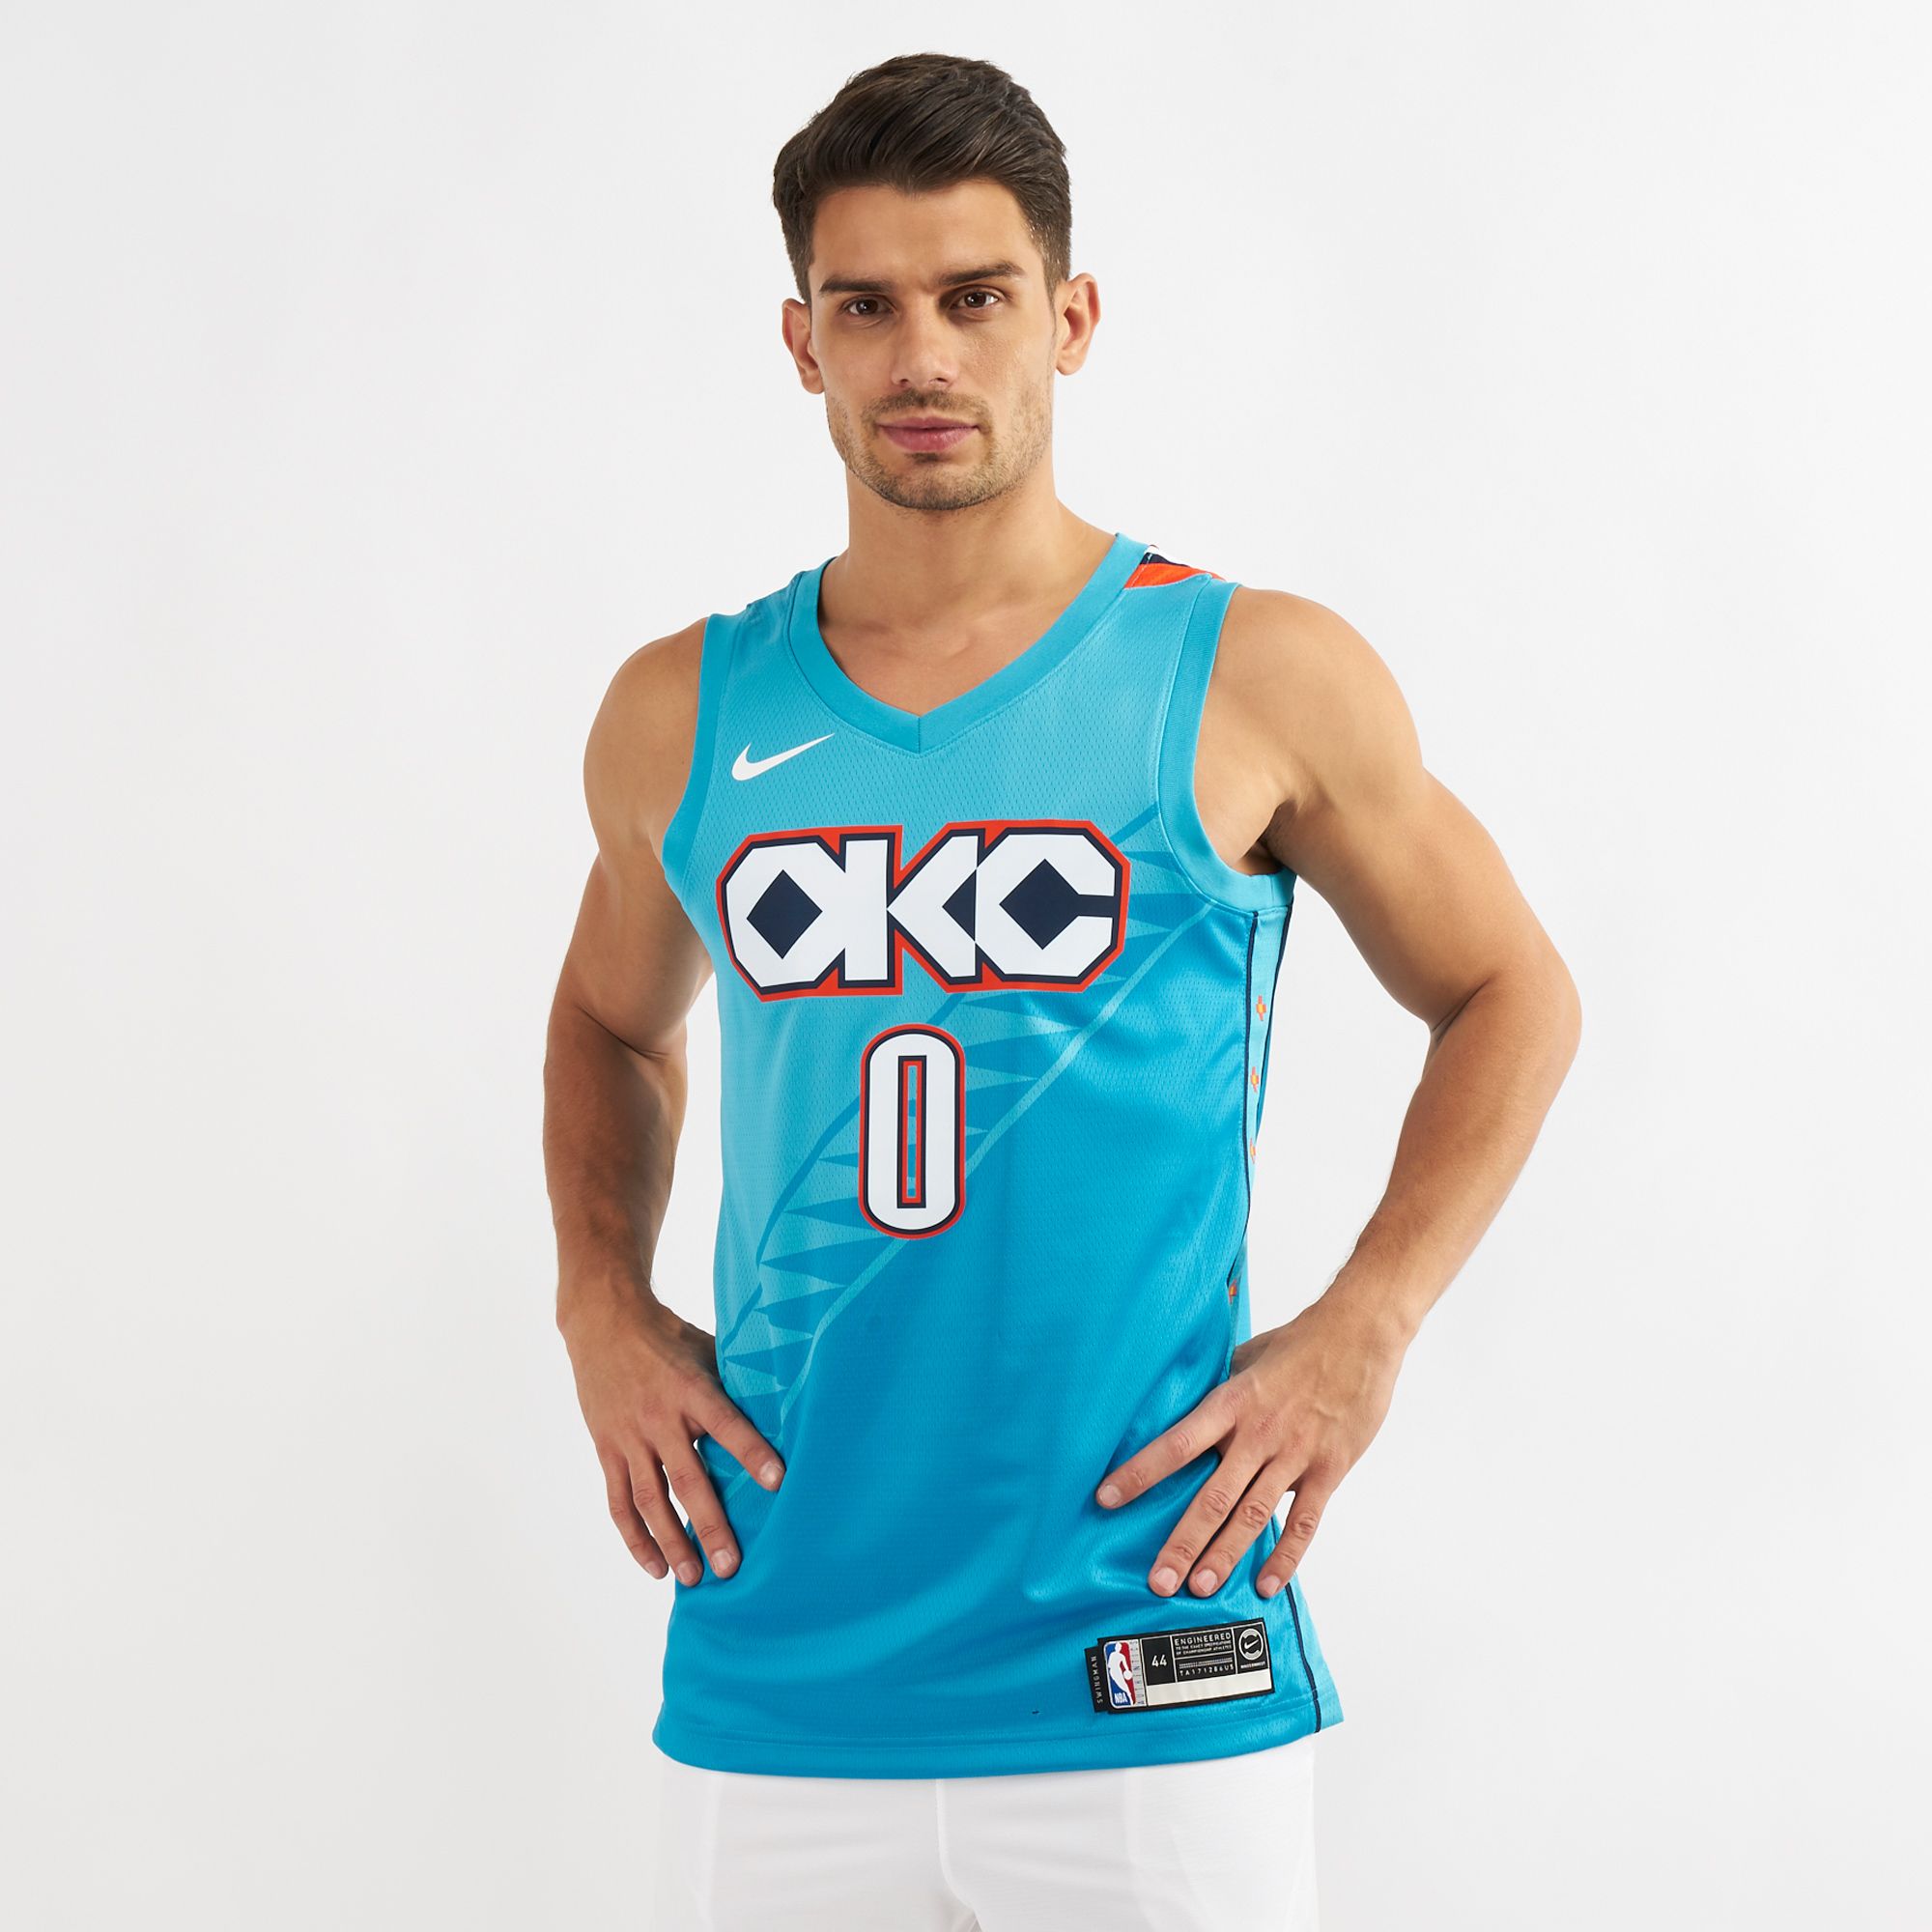 okc city jersey 2018